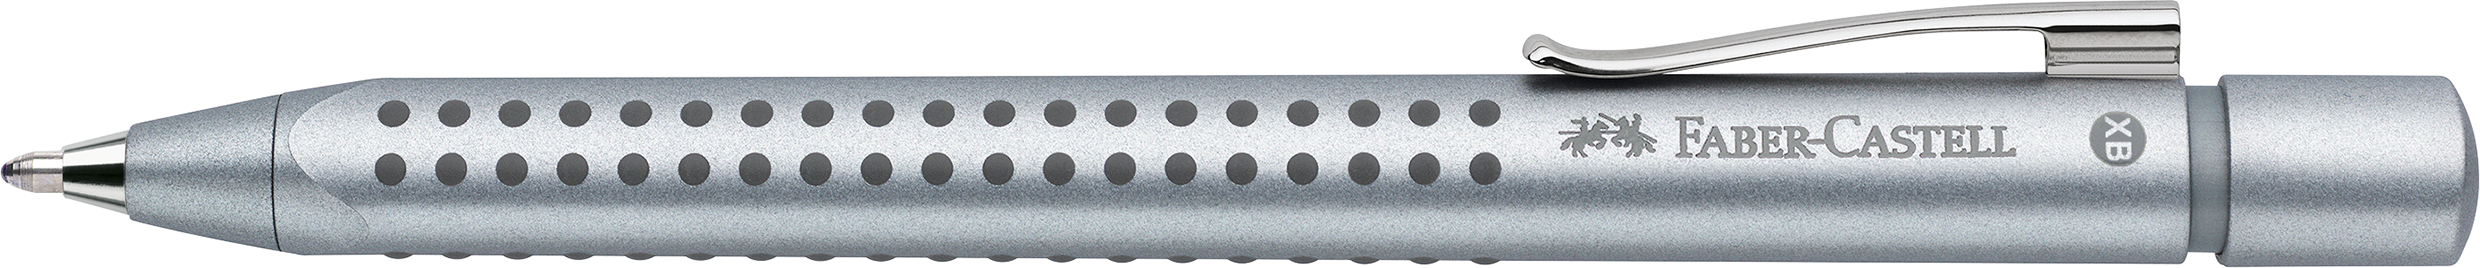 FABER CASTELL Kugelschreiber Grip 2011 M 0.7mm silber<br>